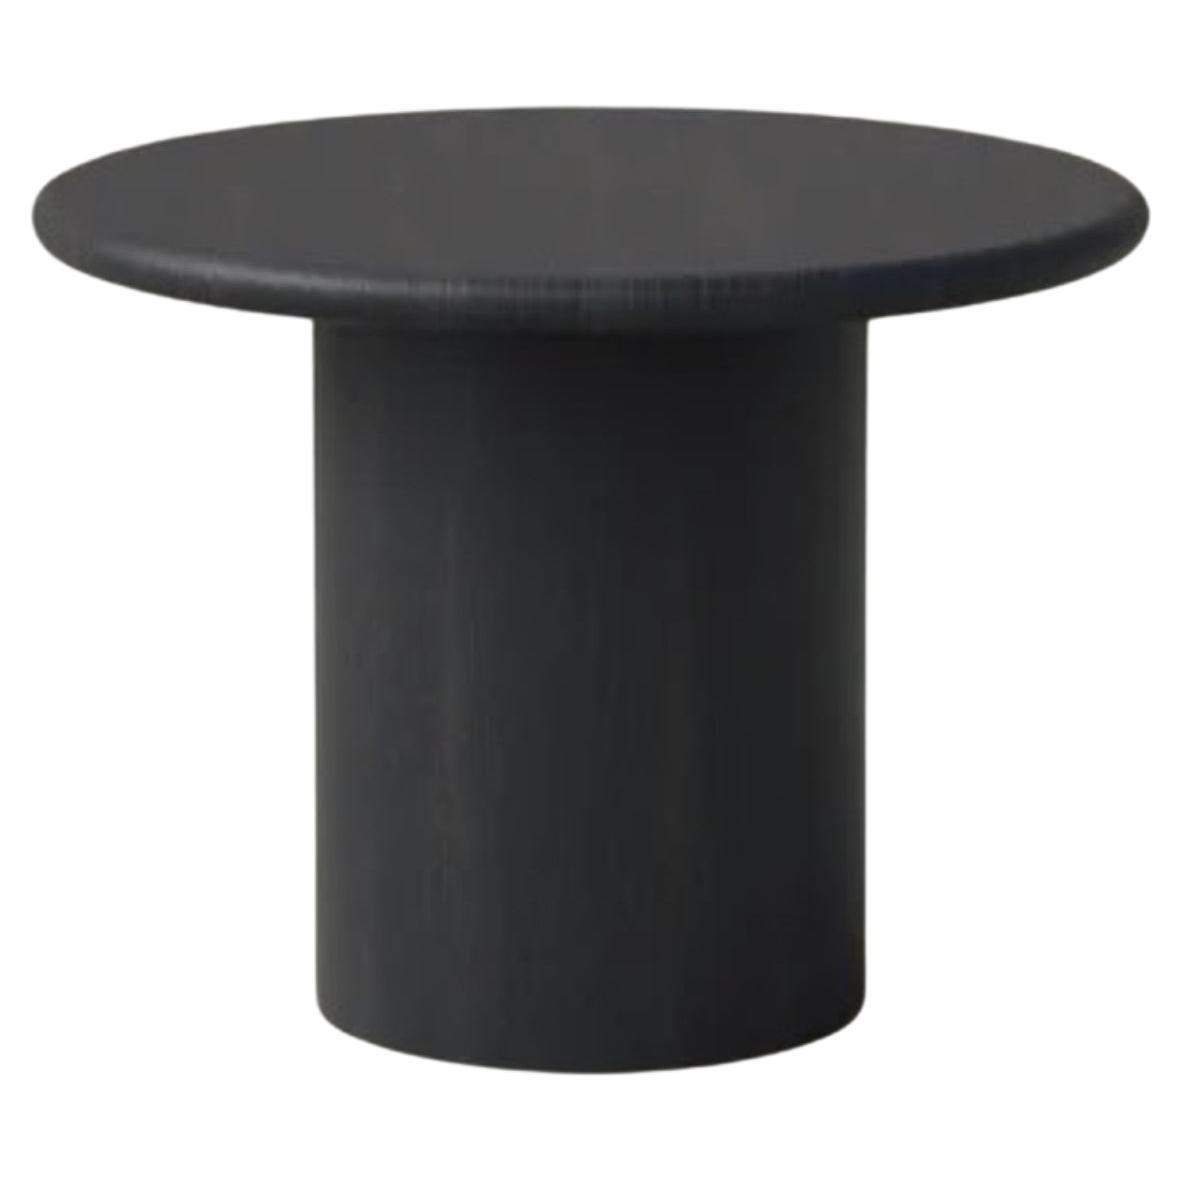 Raindrop Coffee Table, 500, Black Oak / Black Oak For Sale